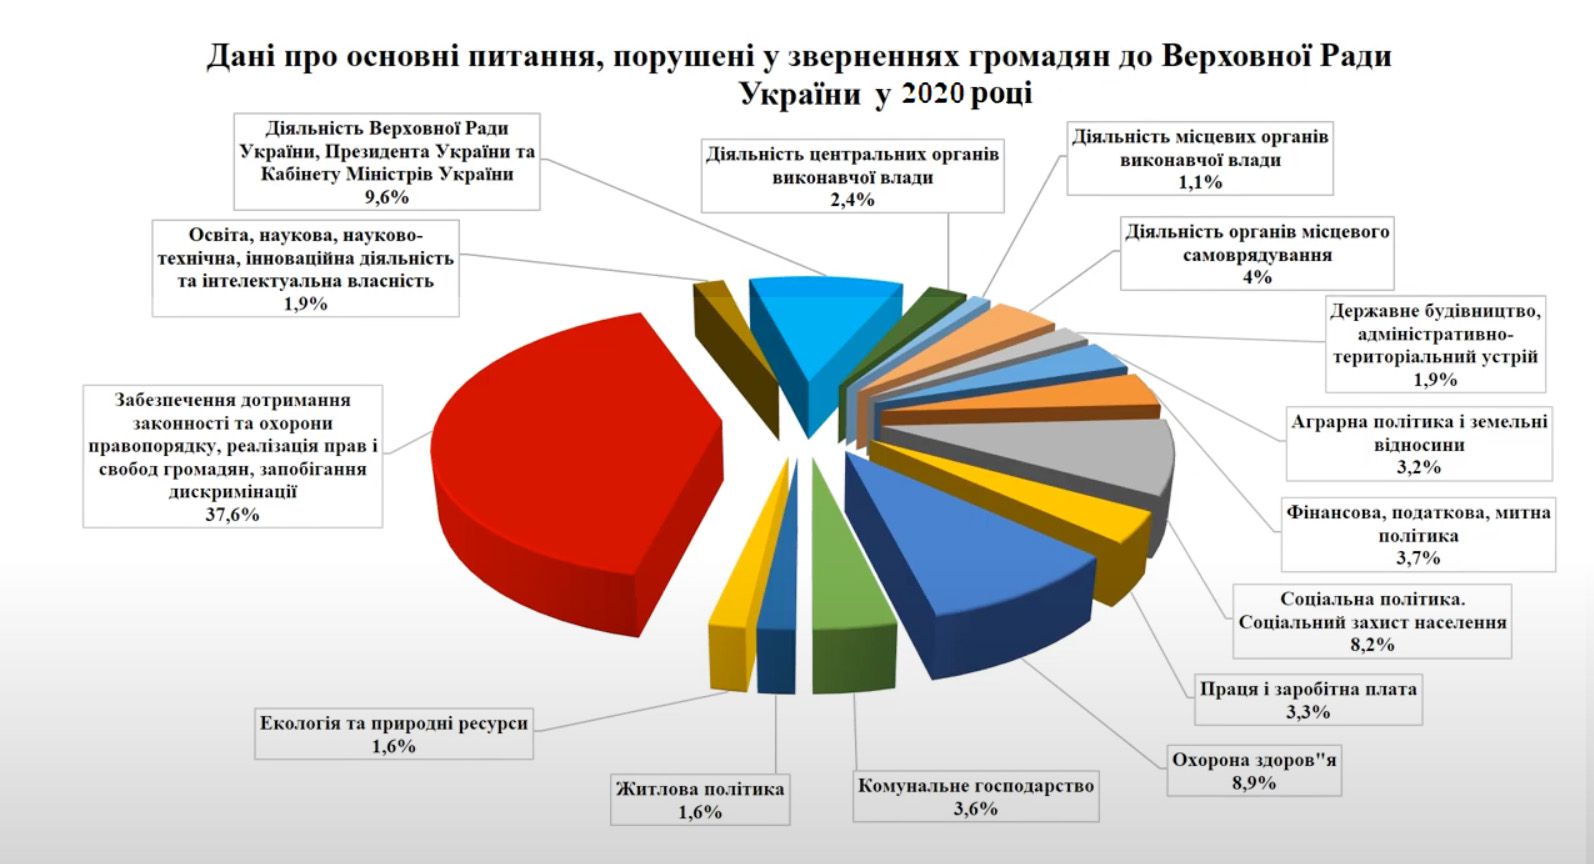 Про звернення громадян до Верховної Ради України та органів місцевого самоврядування у 2020 році